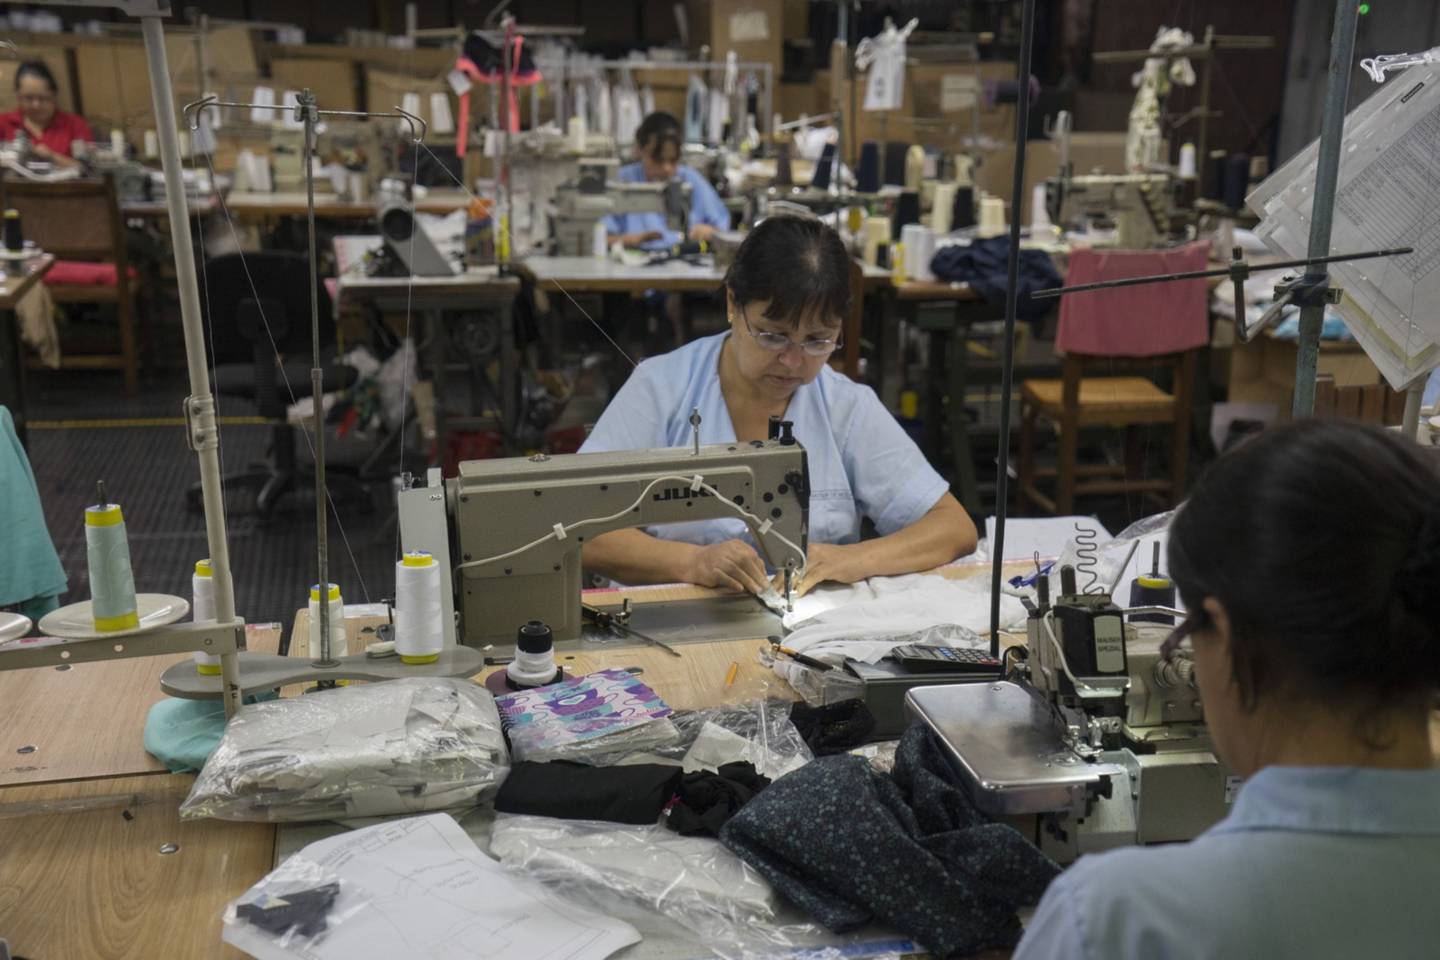 Los trabajadores operan máquinas de coser en una fábrica en Medellín, Colombia, el lunes 25 de agosto de 2014dfd